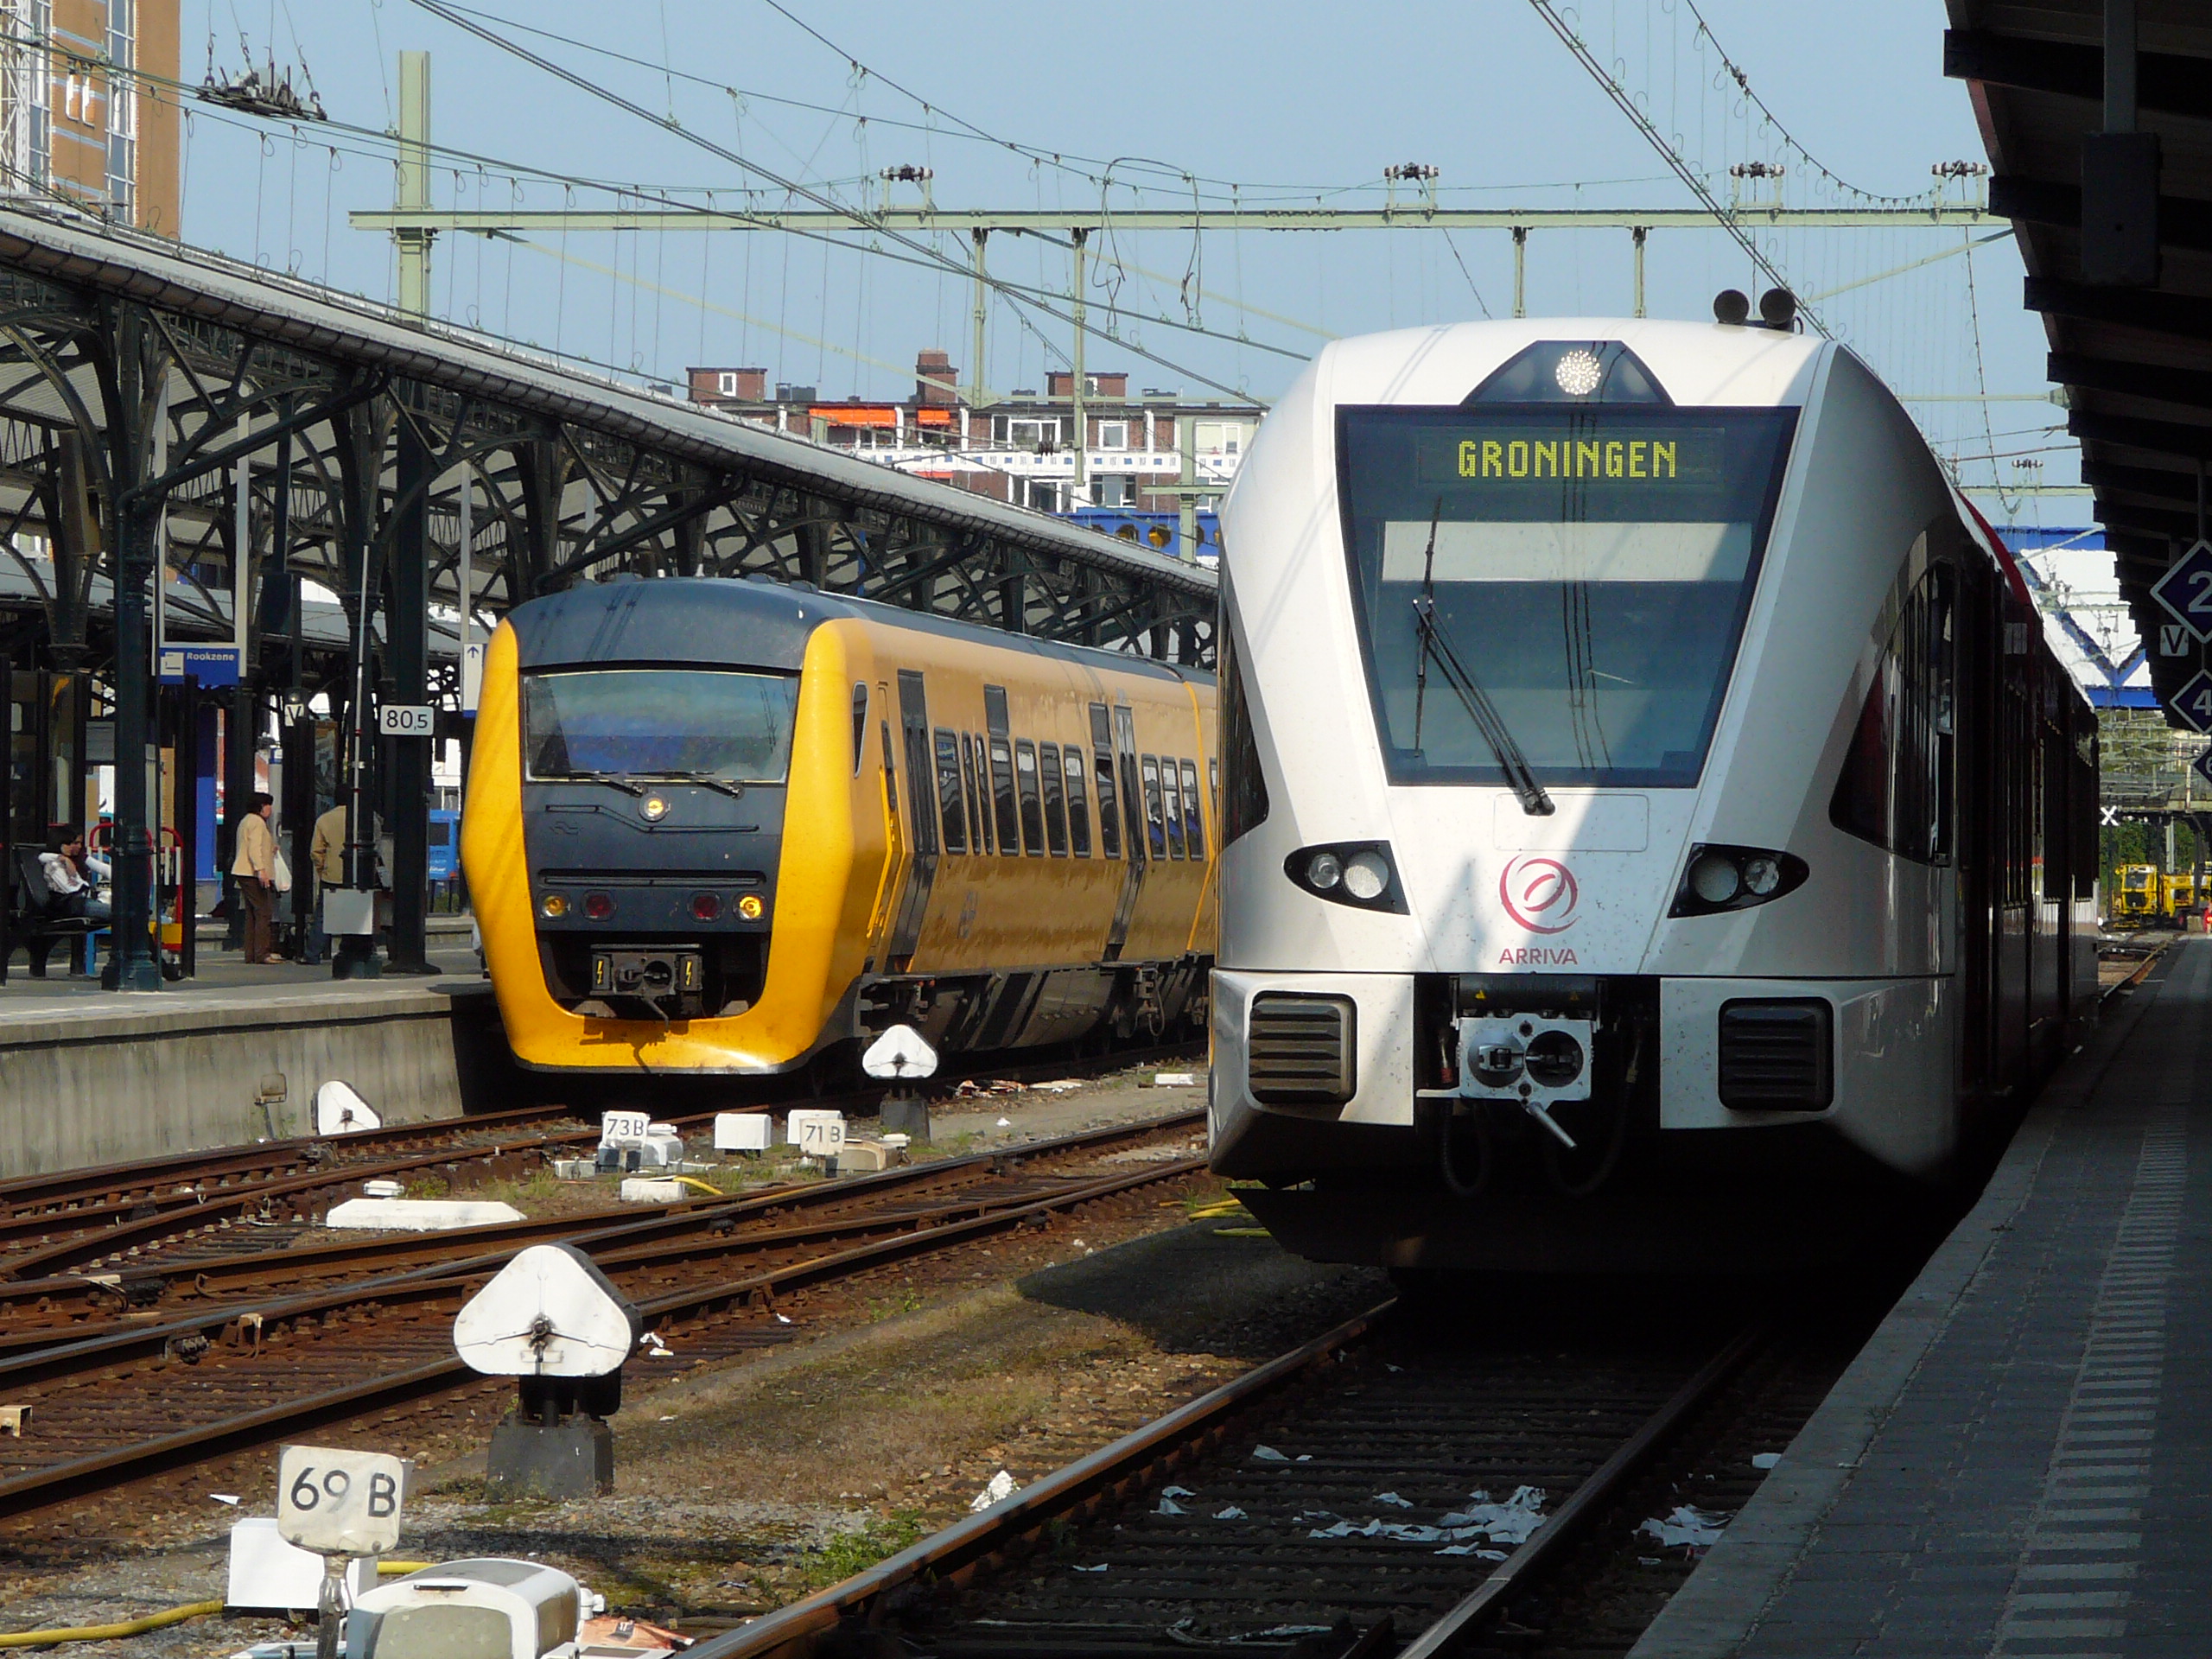 Schnellere Bahnverbindung von Bremen nach Groningen?